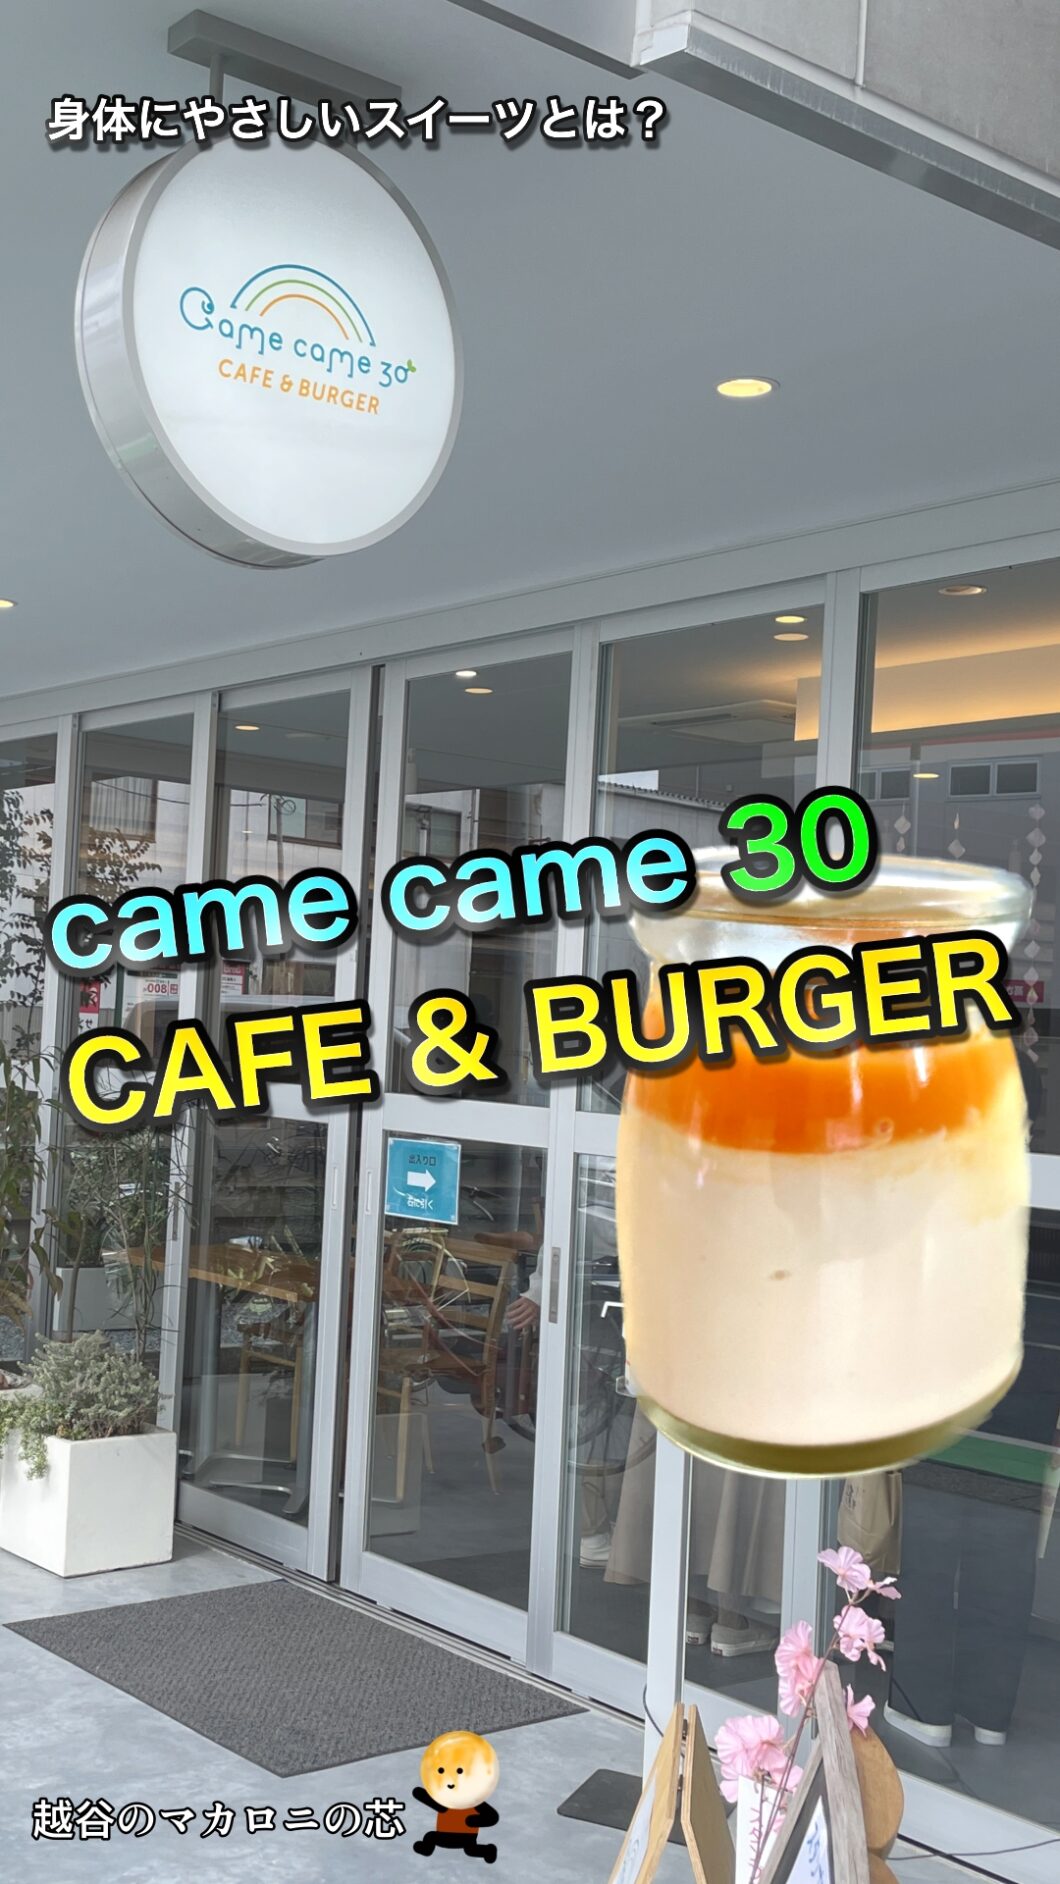 【came came 30 CAFE & BURGER】身体にやさしい！というスイーツを食べてみました！